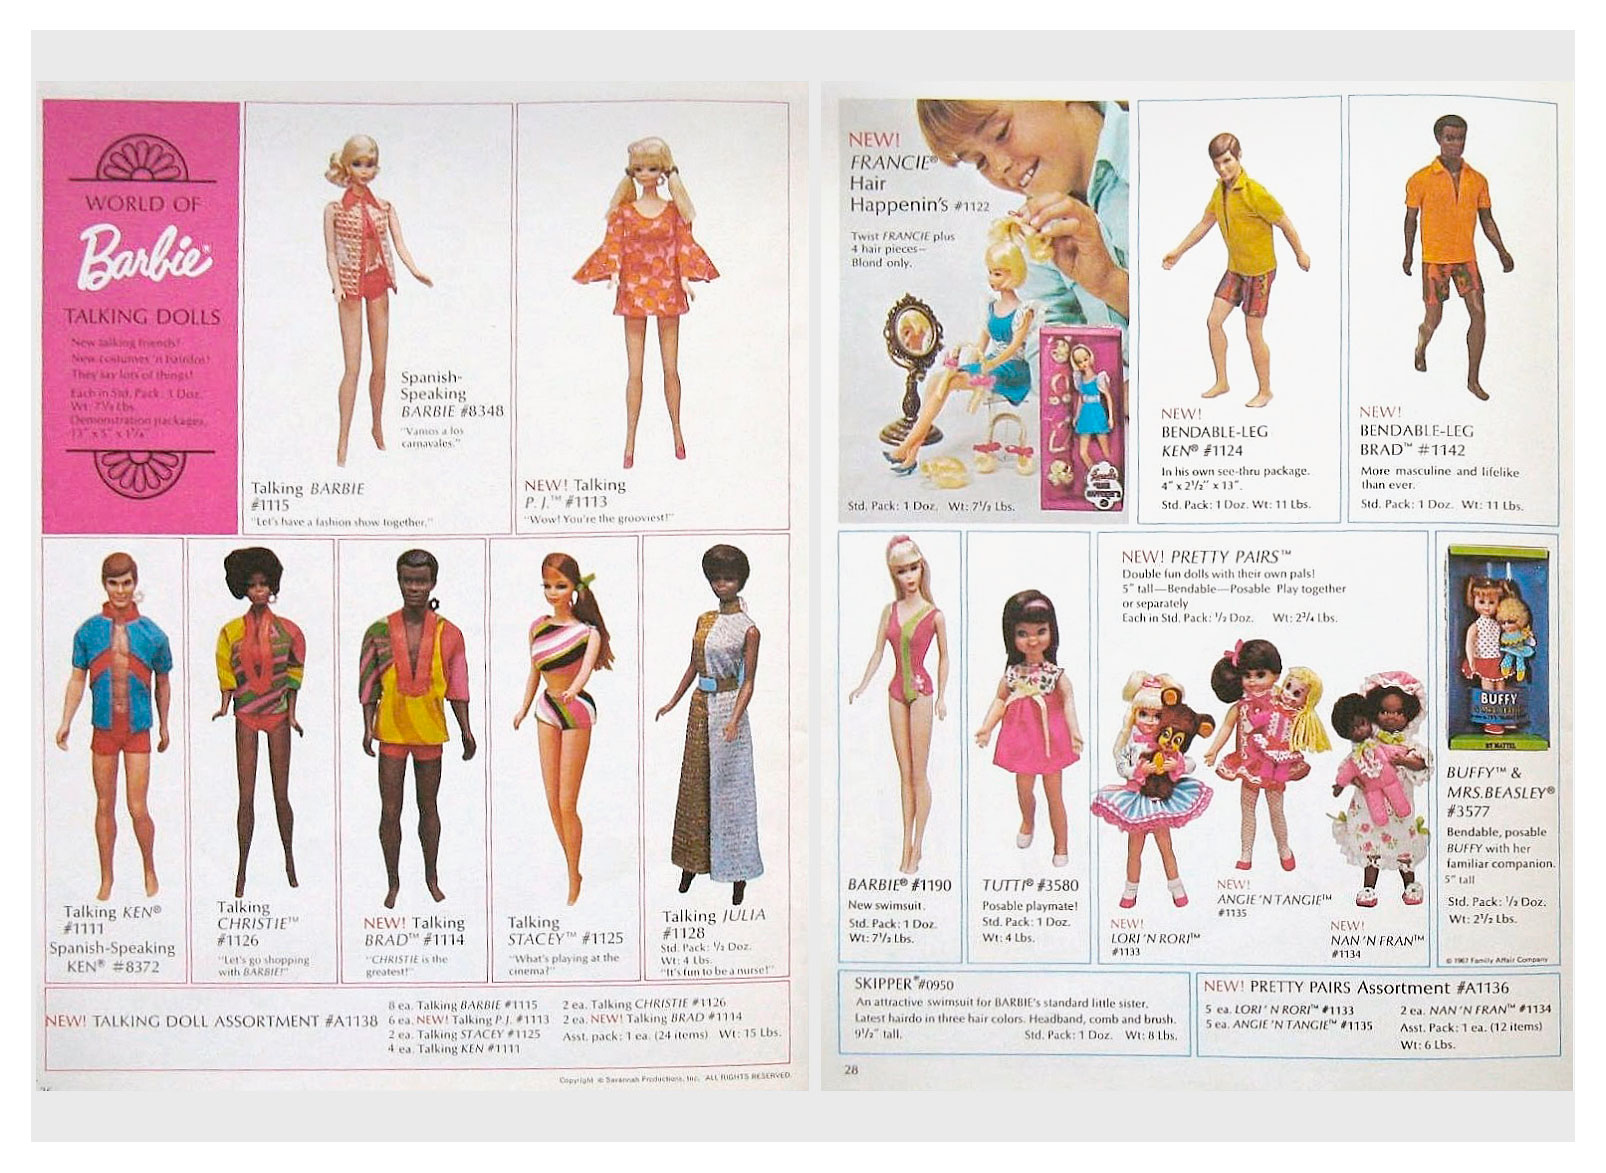 From Mattels Dolls 1970 catalogue